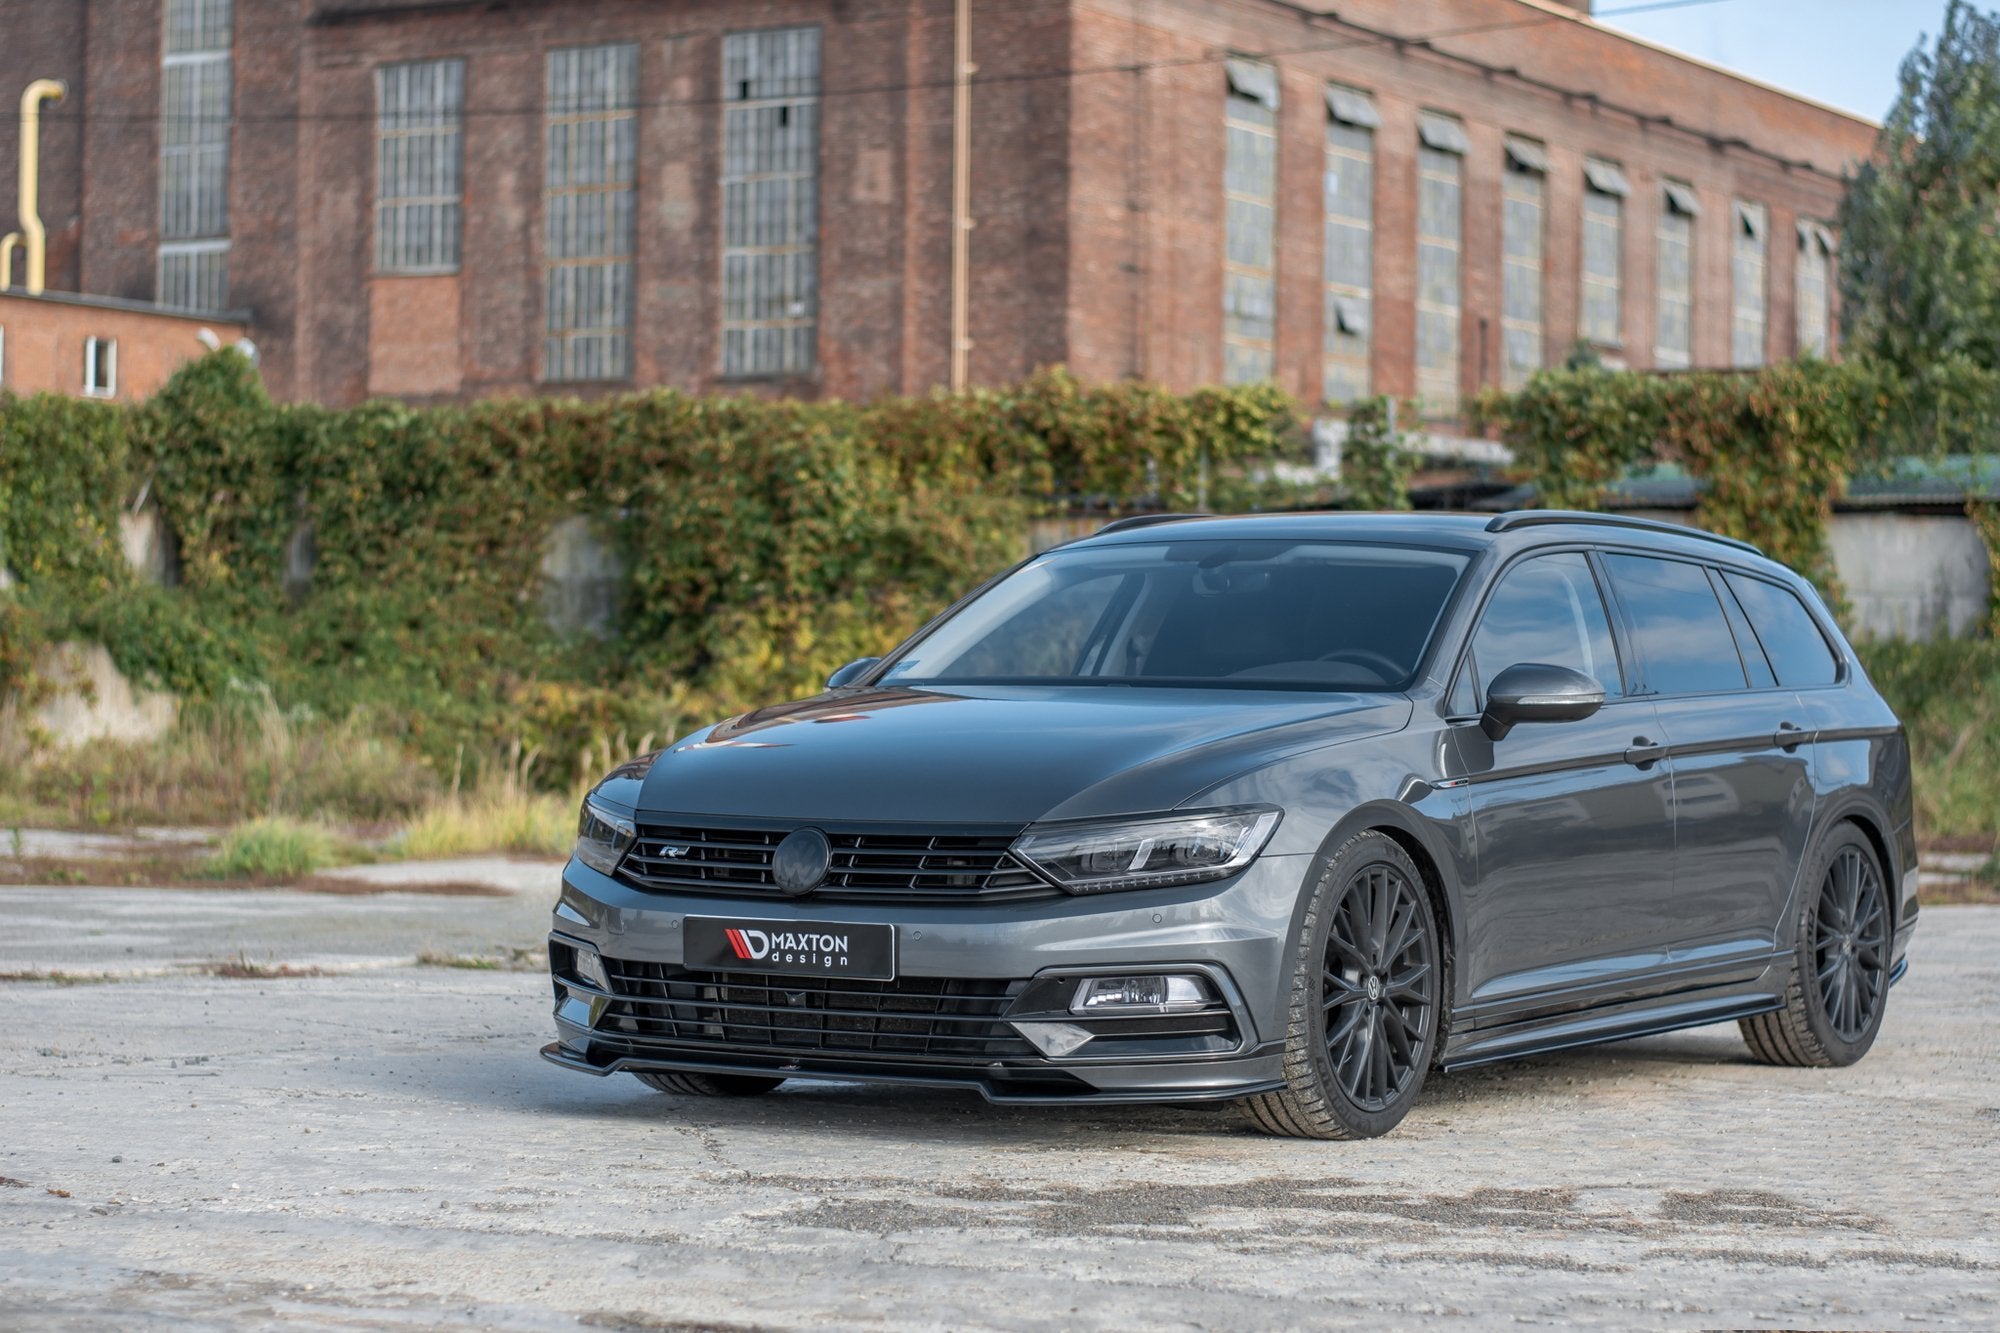 Front Ansatz V.2 für Volkswagen Passat R-Line B8 Carbon Look